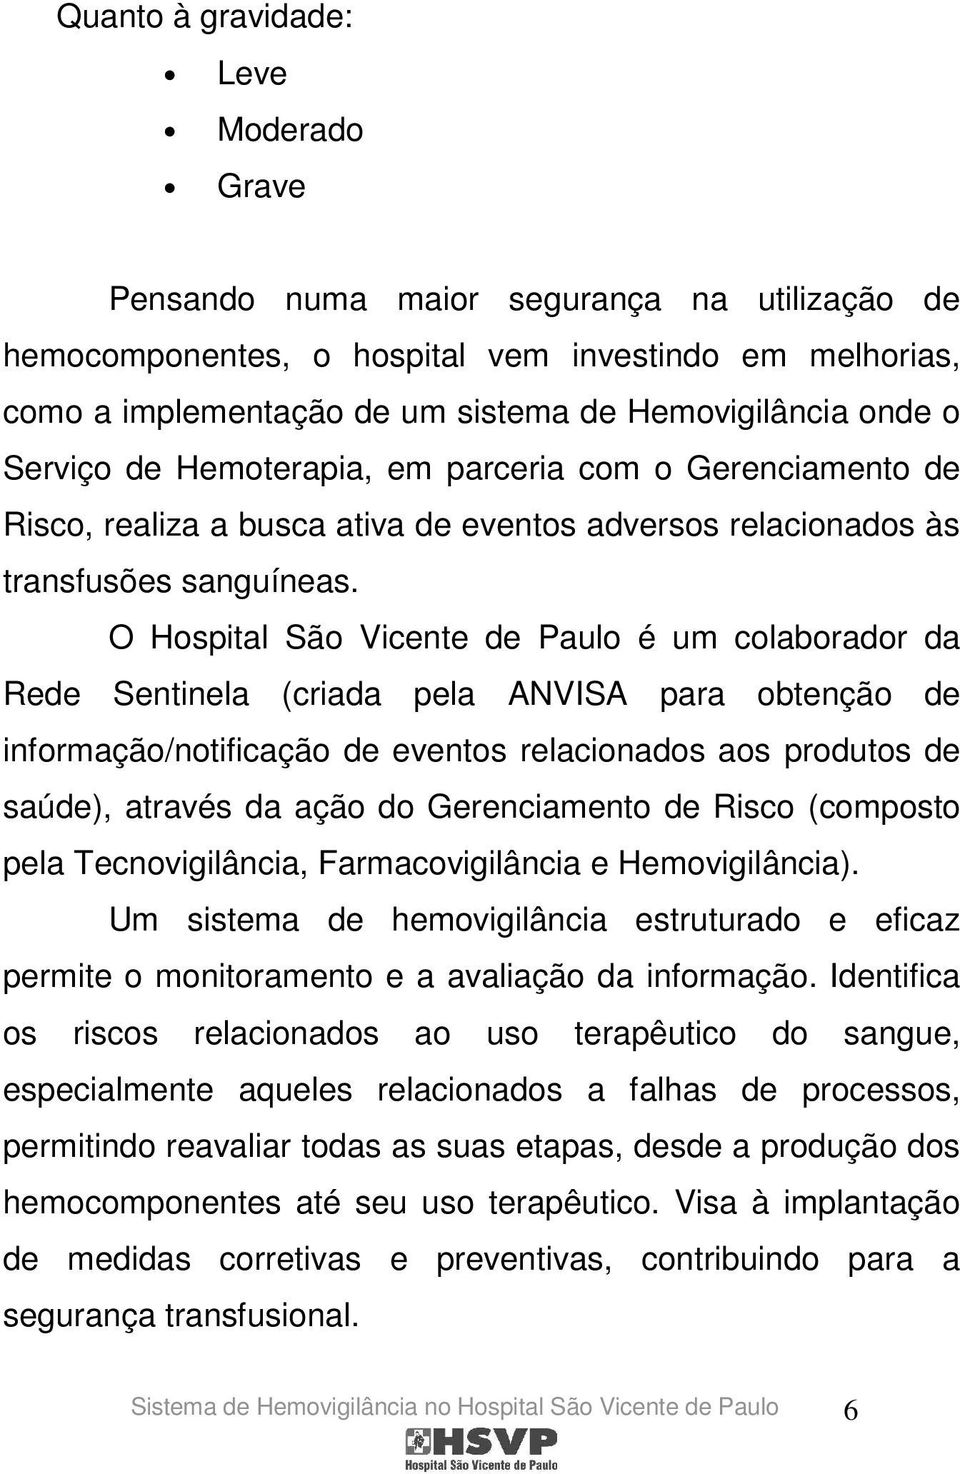 O Hospital São Vicente de Paulo é um colaborador da Rede Sentinela (criada pela ANVISA para obtenção de informação/notificação de eventos relacionados aos produtos de saúde), através da ação do